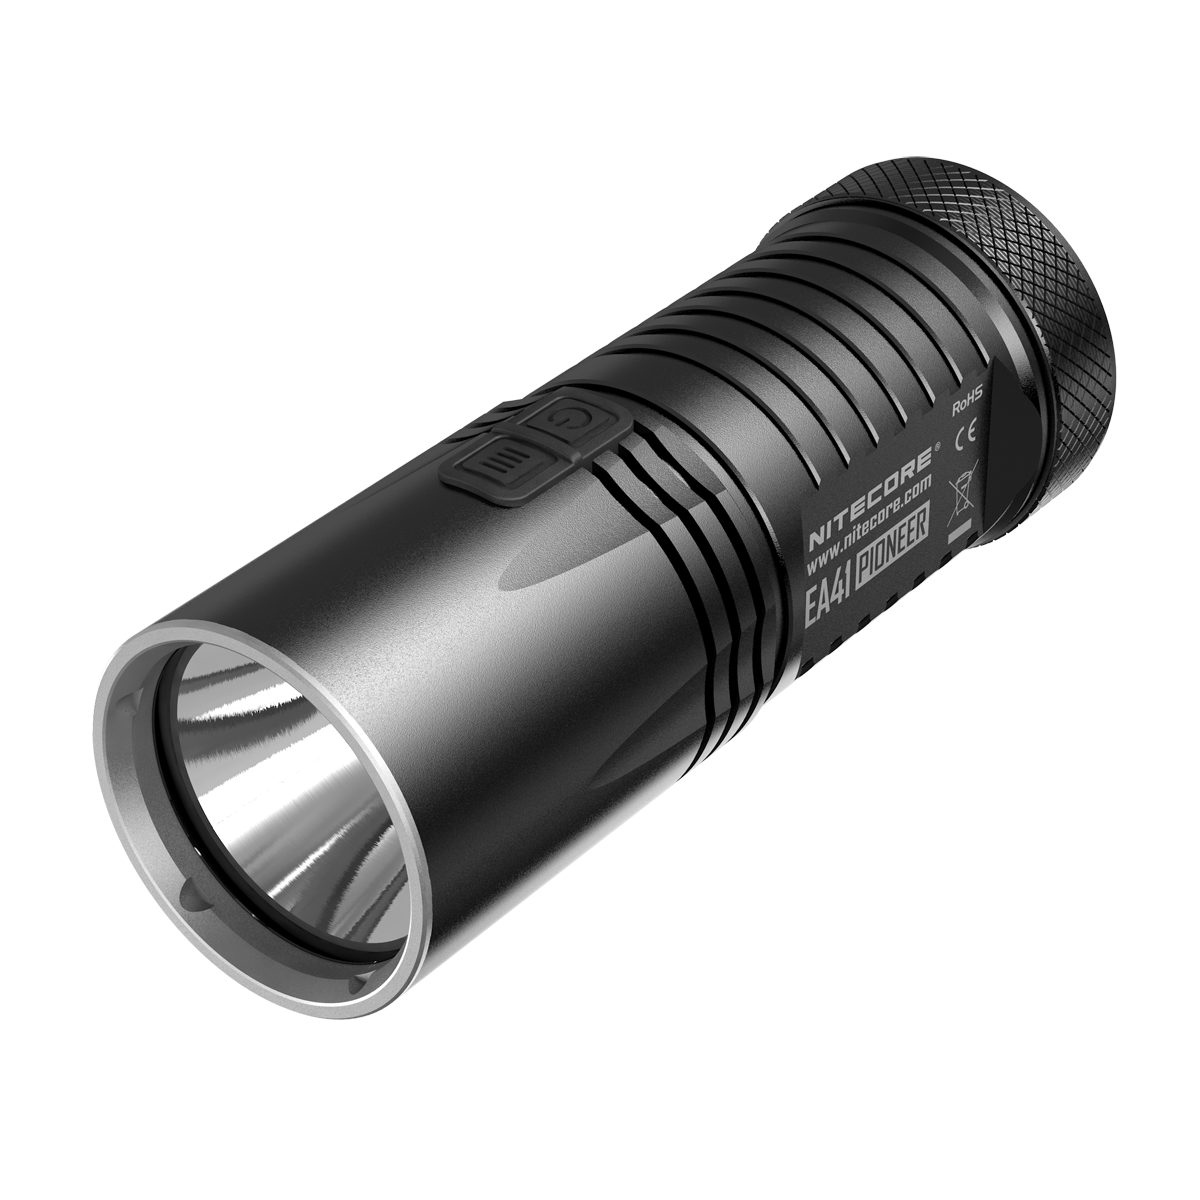 Nitecore EA41 / EA41W  XM-L2 U2 LED 1020 Lumens LED Flashlight Search Light